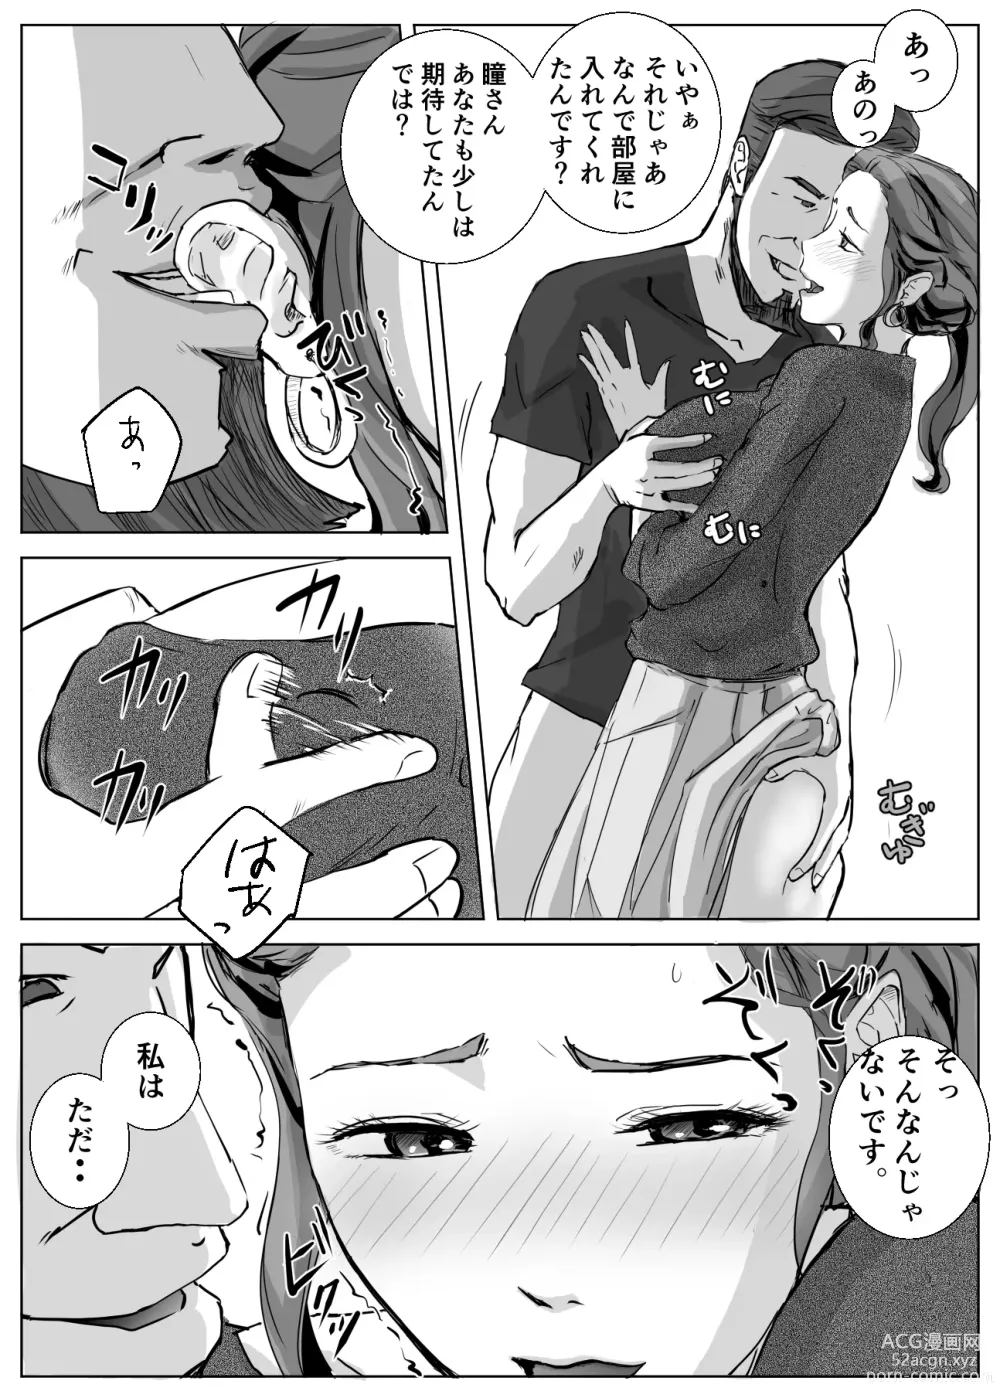 Page 6 of doujinshi Ano Hi no Uso 4 Rina Mama ~Hitomi~ 1-nen Mae no Dekigoto